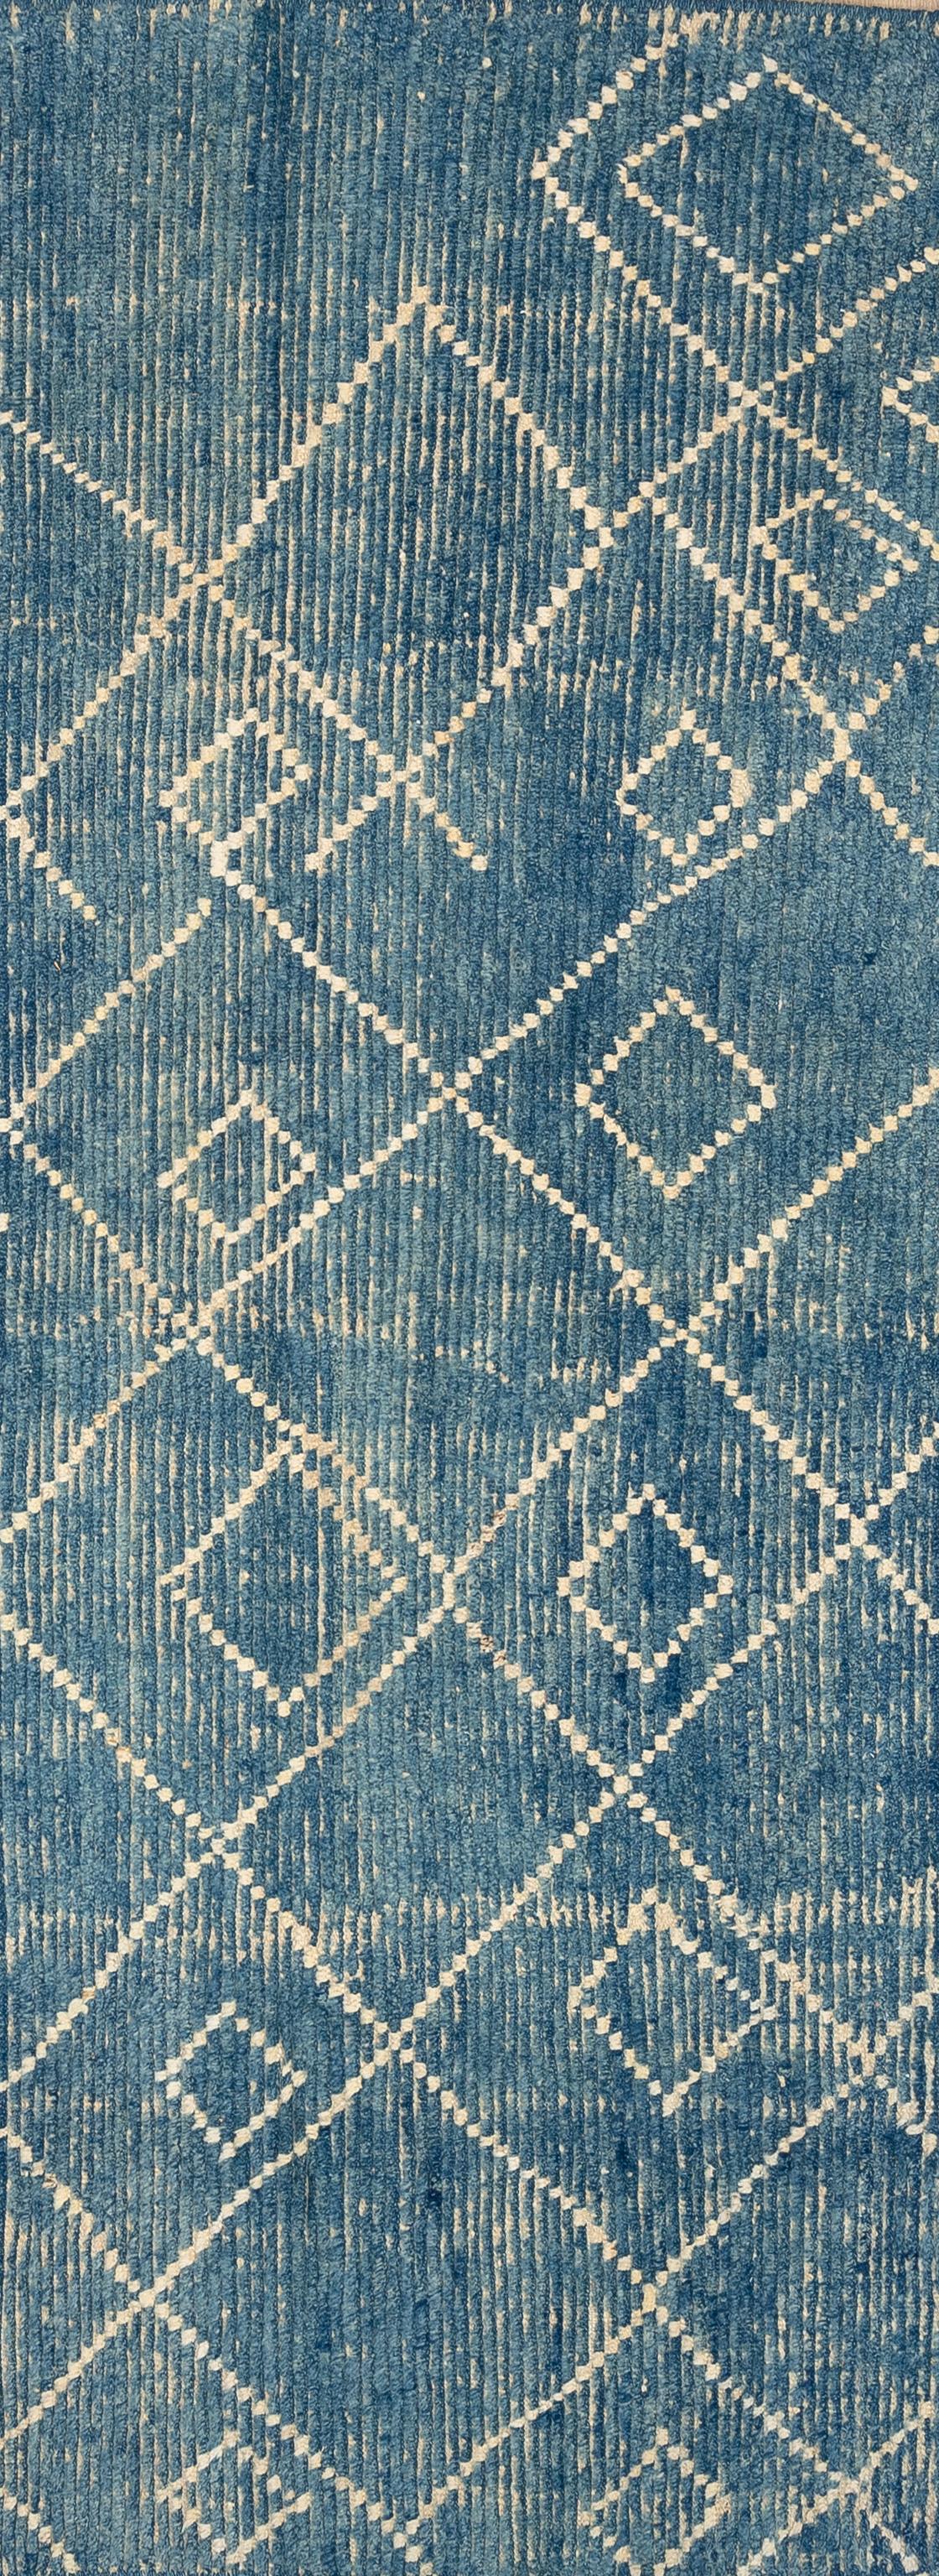 Handgewebt aus 100% handgesponnener Wolle in den Bergen Afghanistans ist dieser wunderschöne, natürlich gefärbte marokkanische Teppich ein echtes Unikat. Marokkanische Teppiche sind meist schlicht und passen perfekt zu Ihrer Einrichtung. Von